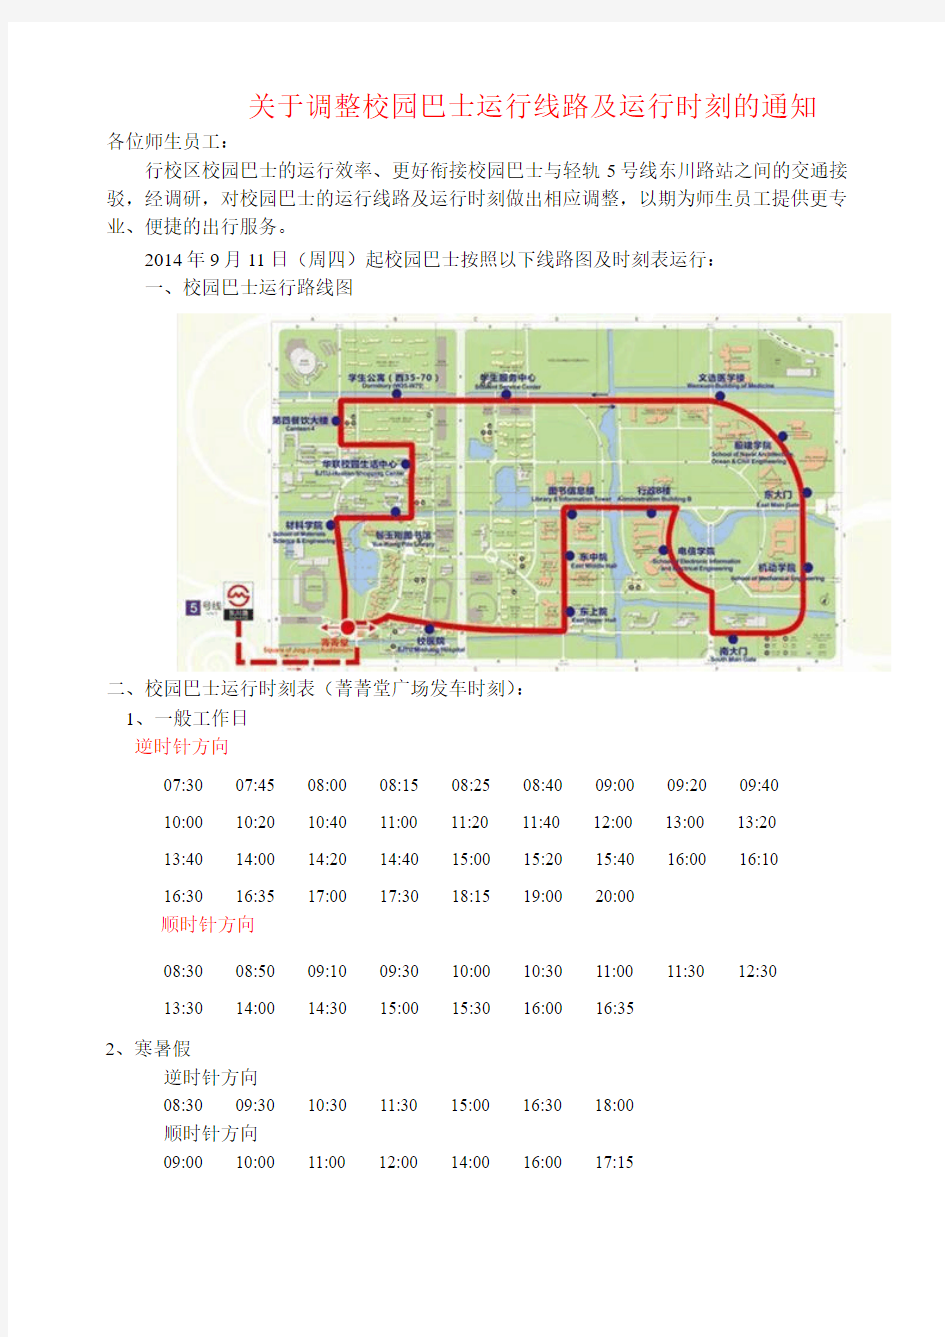 上海交通大学校园巴士时刻表